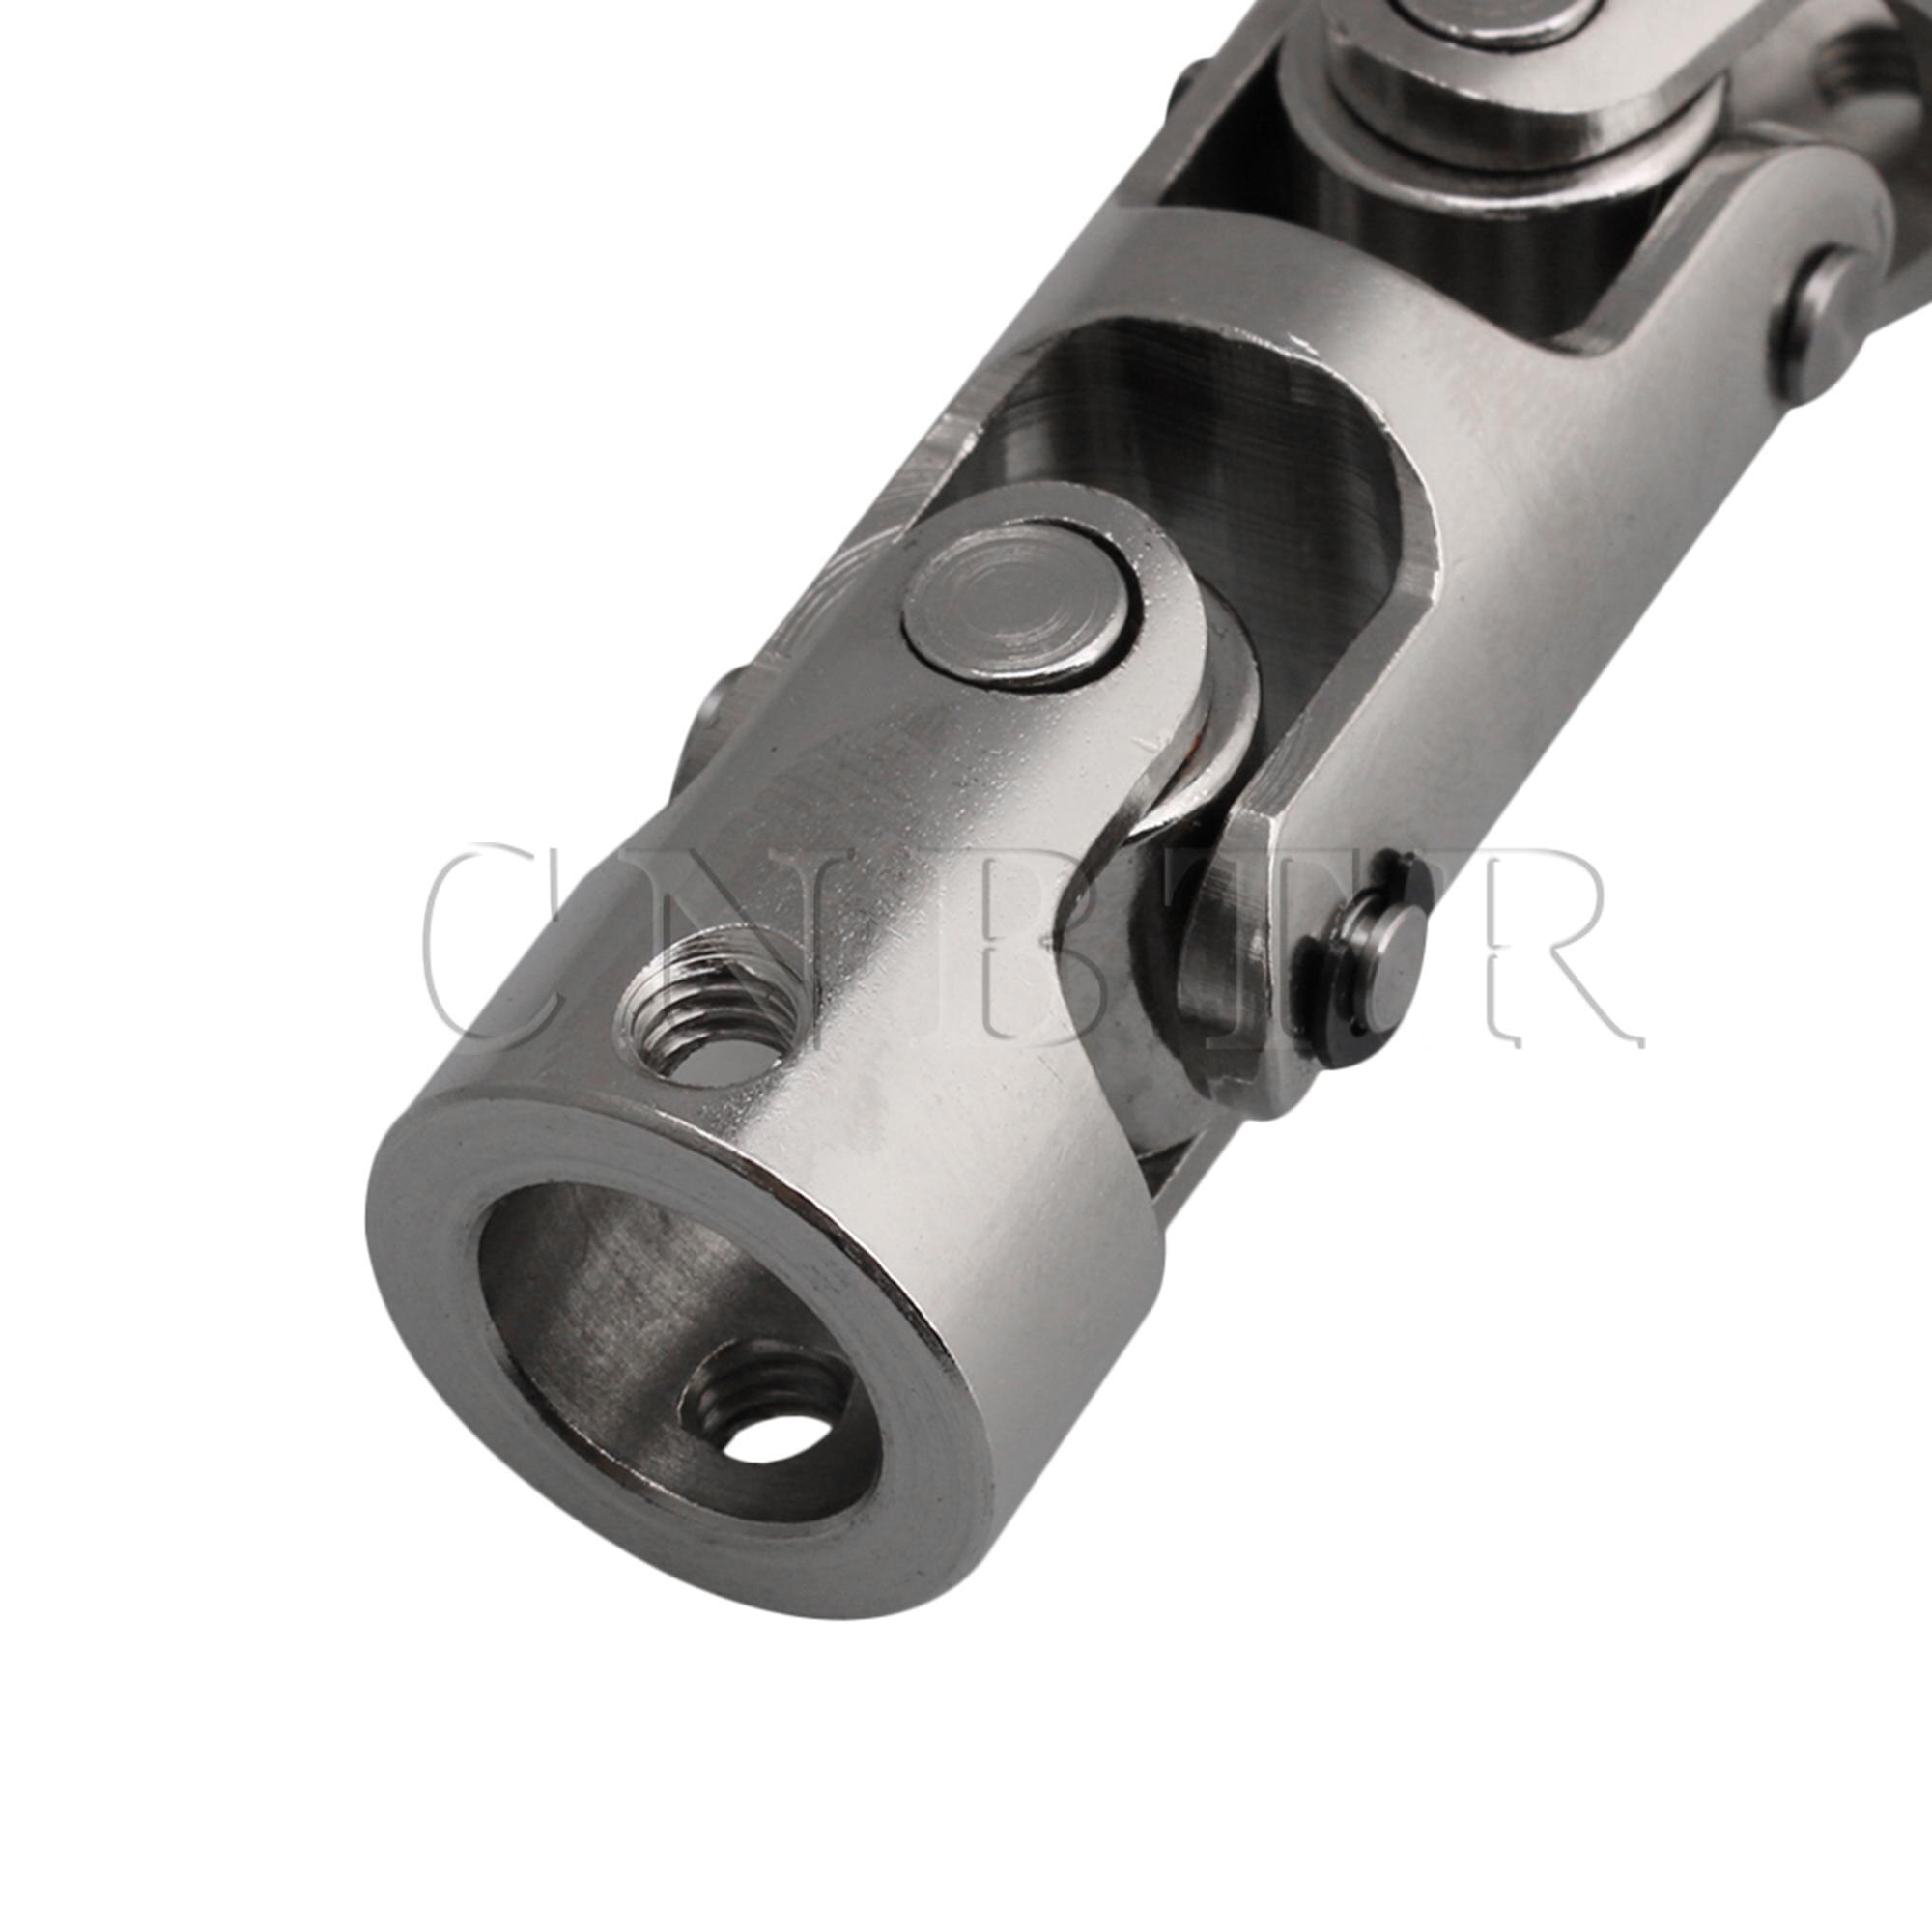 Cnbtr 10mm-10mm id 16mm od sølv 45# stål tre-sektions universal samling kobling aksel motor stik kobling med unbrakonøgle